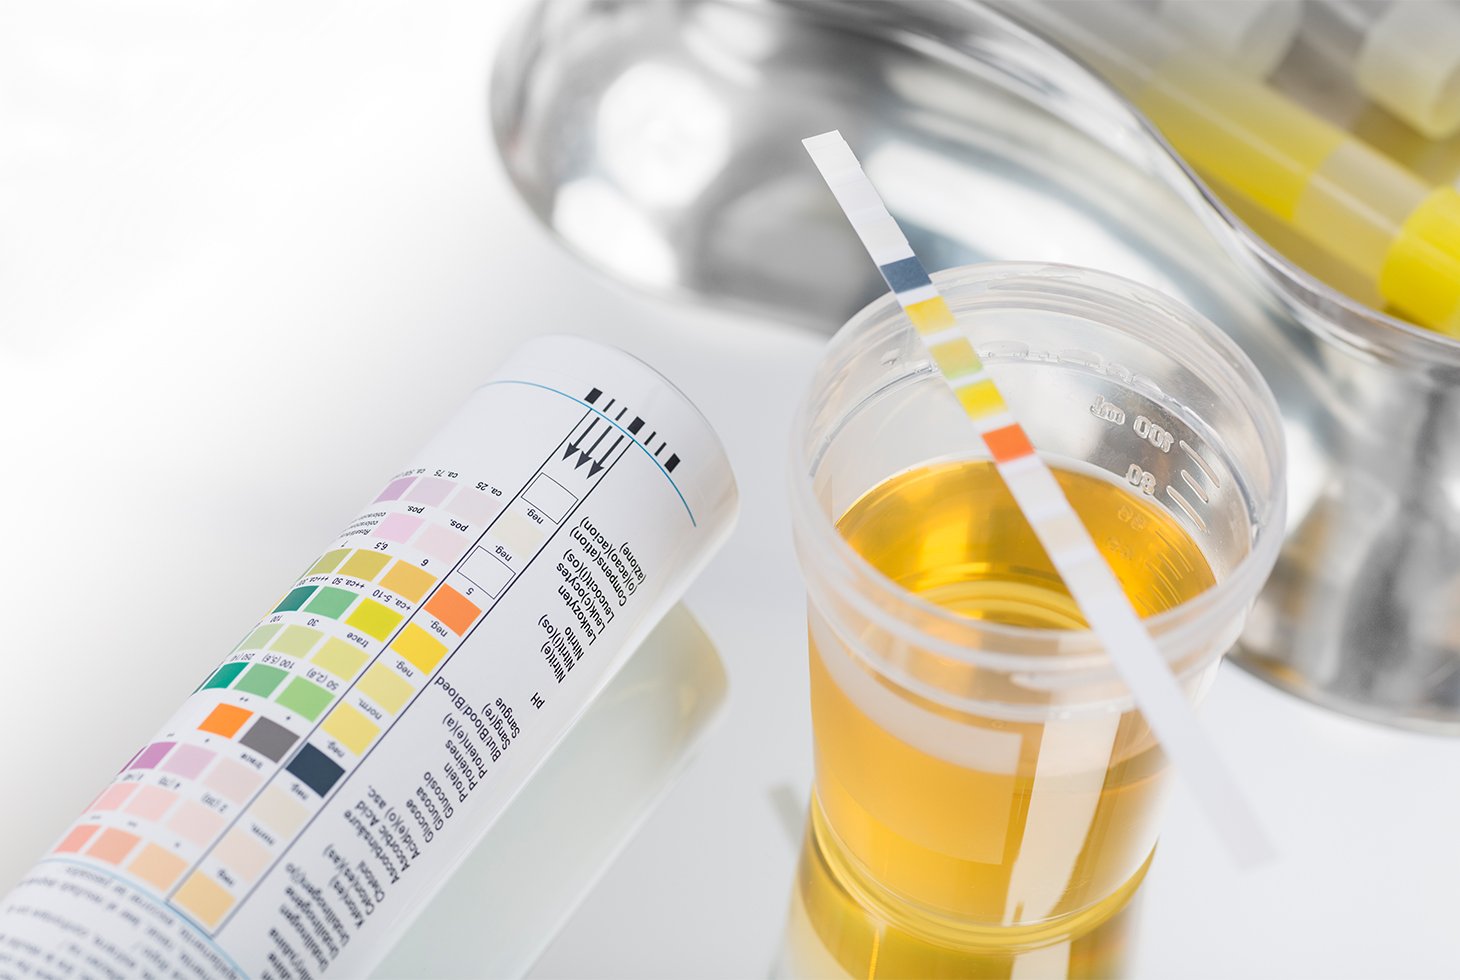 Visuel d’un échantillon d’urine analysé en laboratoire. Un prélèvement effectué dans le cadre d’une analyse urinaire